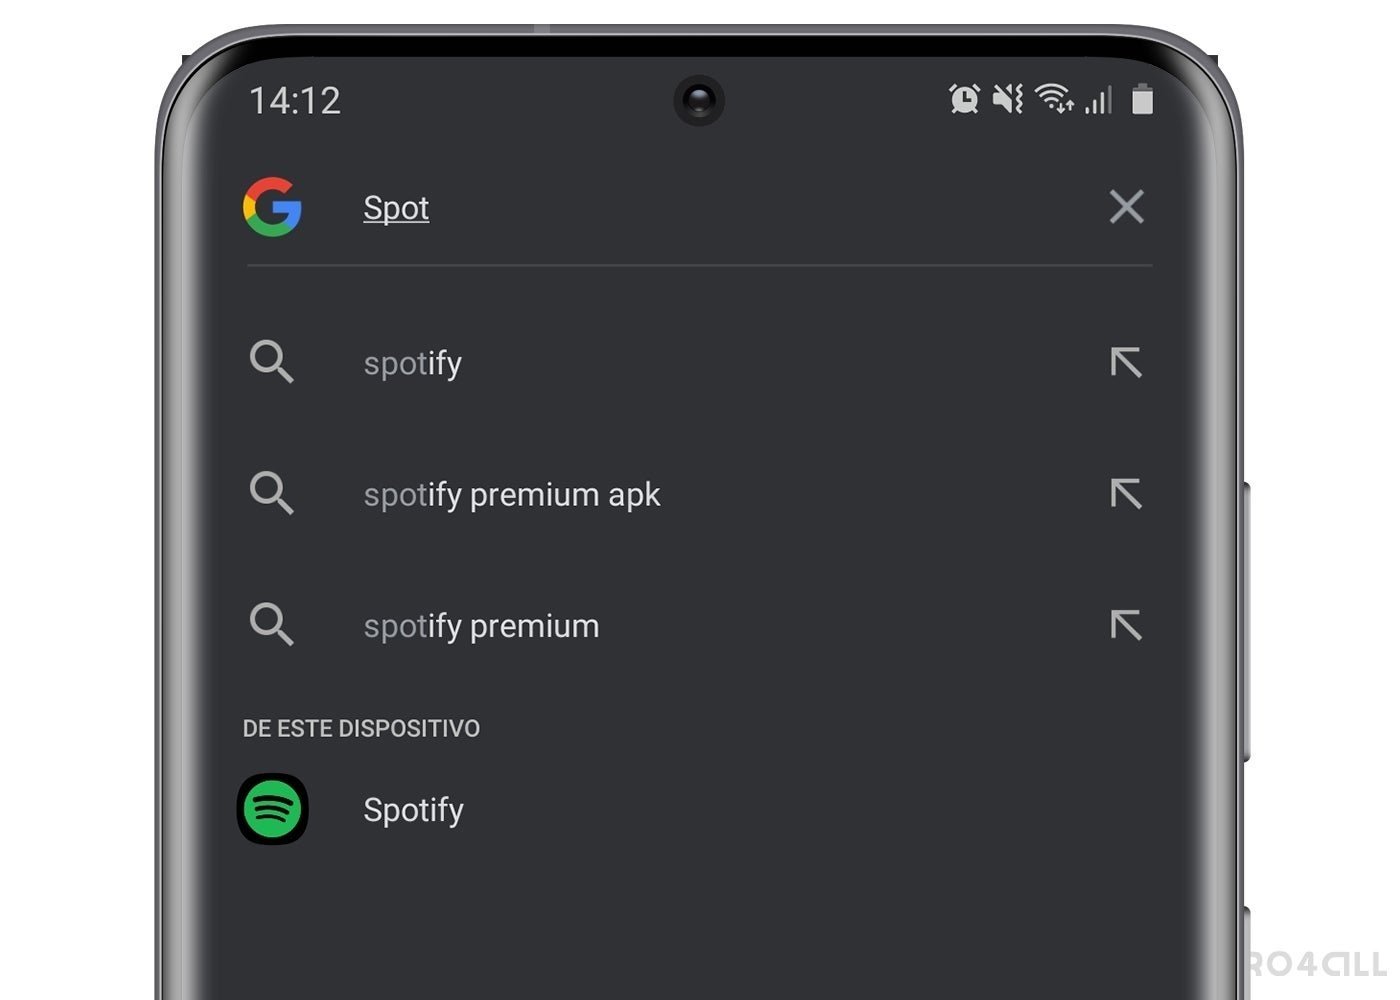 Buscar apps desde la barra de búsqueda de Google